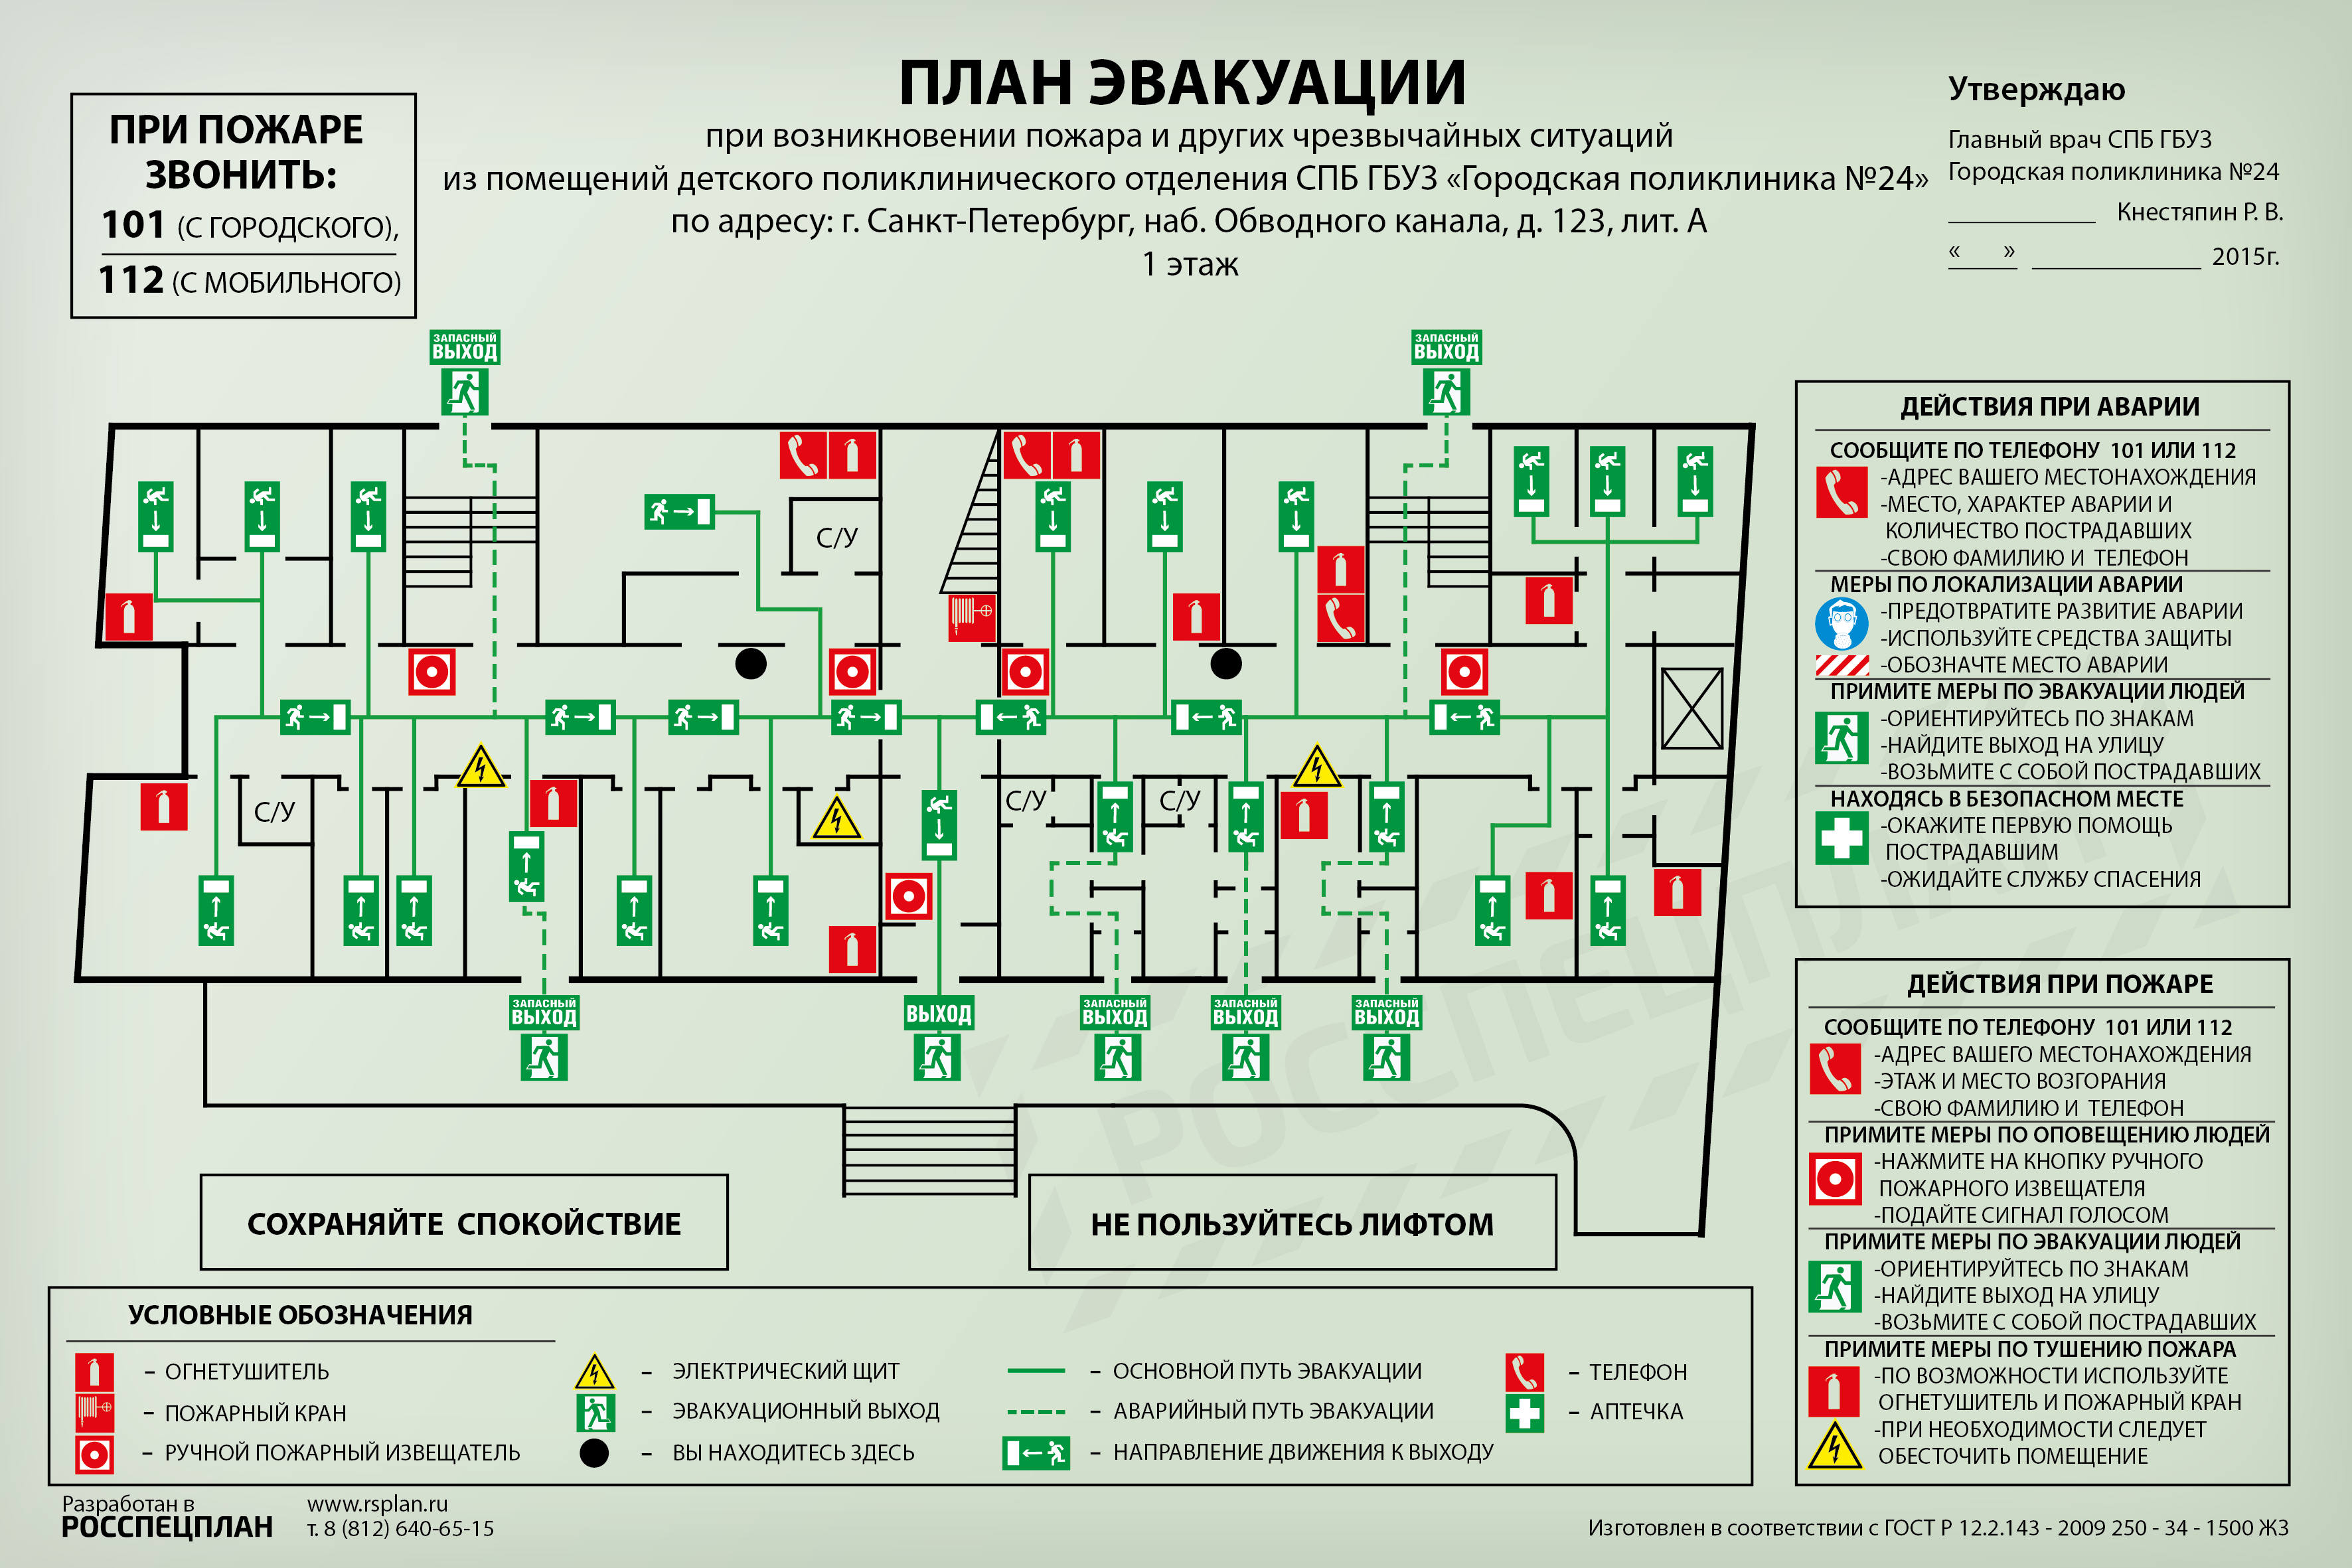 Сколько эвакуационные выходы на этаж. План эвакуации 1 этажа городская поликлиника 24. Краснодар детская 9 поликлиника план эвакуации. Череповец областная больница 2 план эвакуации. ОКБ план эвакуации Ханты-Мансийск.